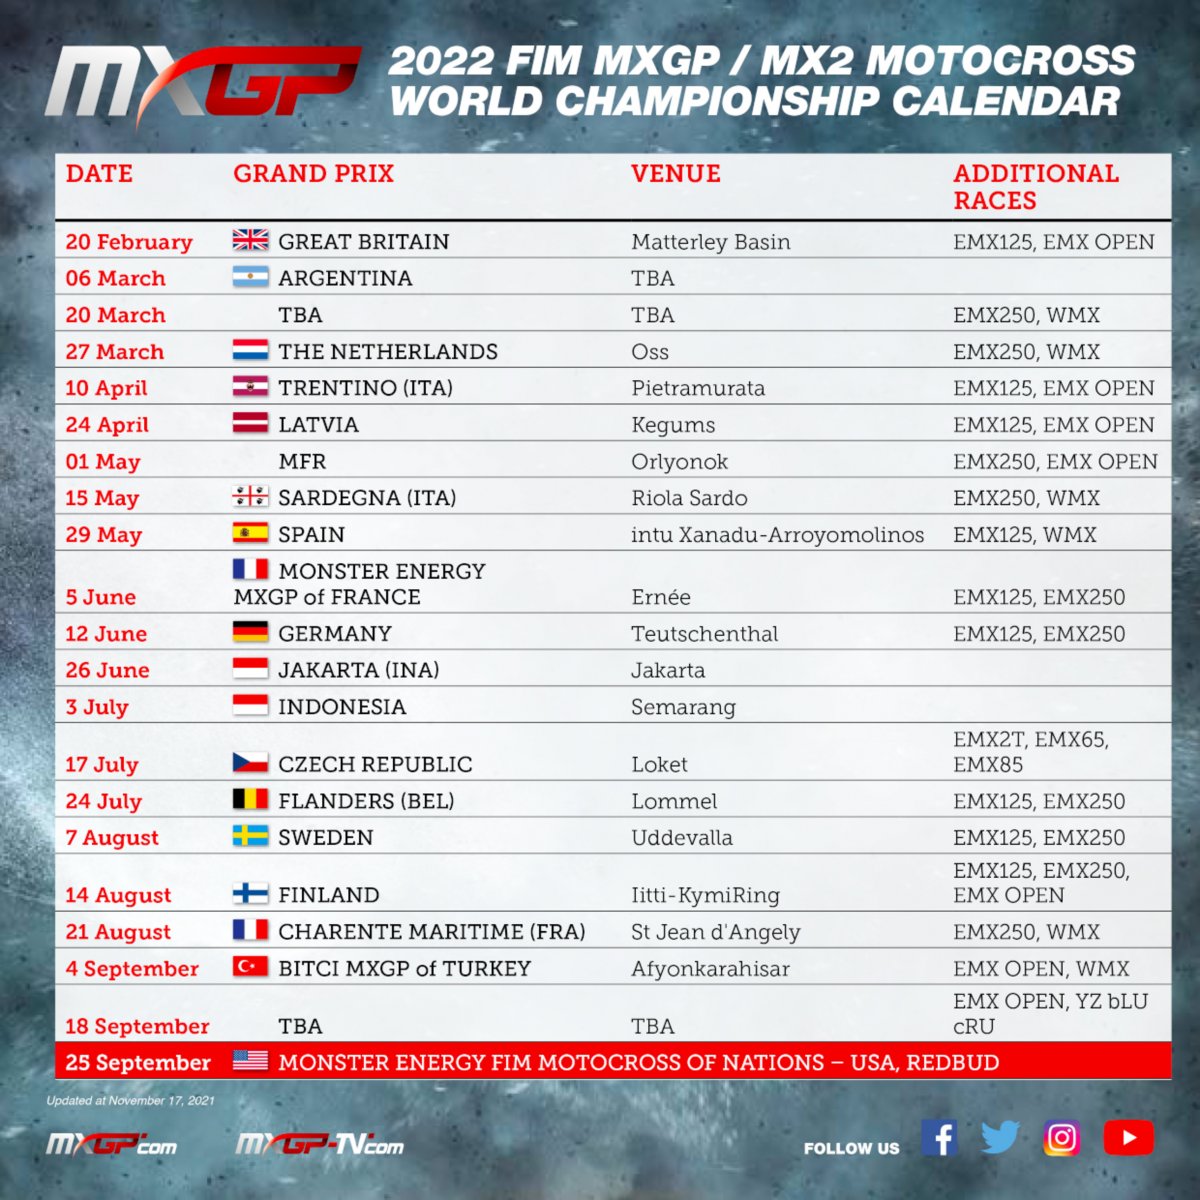 Мотокросс MXGP: календарь чемпионата мира 2022 / МОТОГОНКИ.РУ